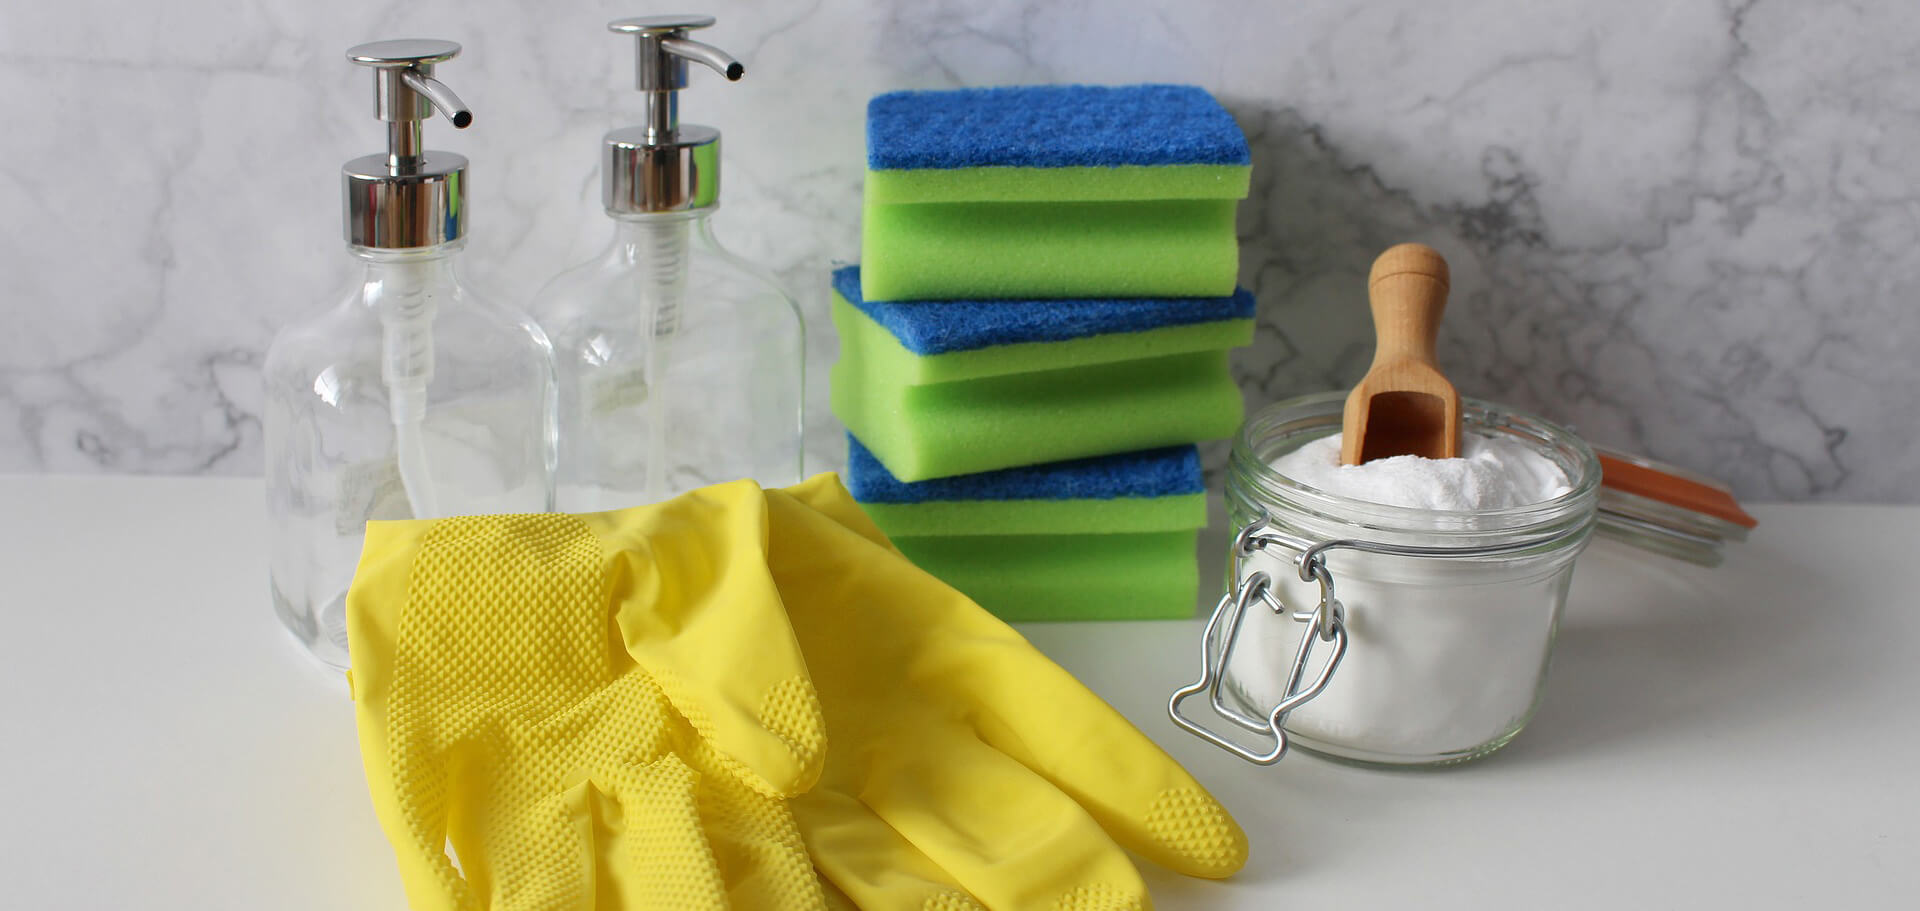 Cristaux de soude et gants pour nettoyer un canape en tissu